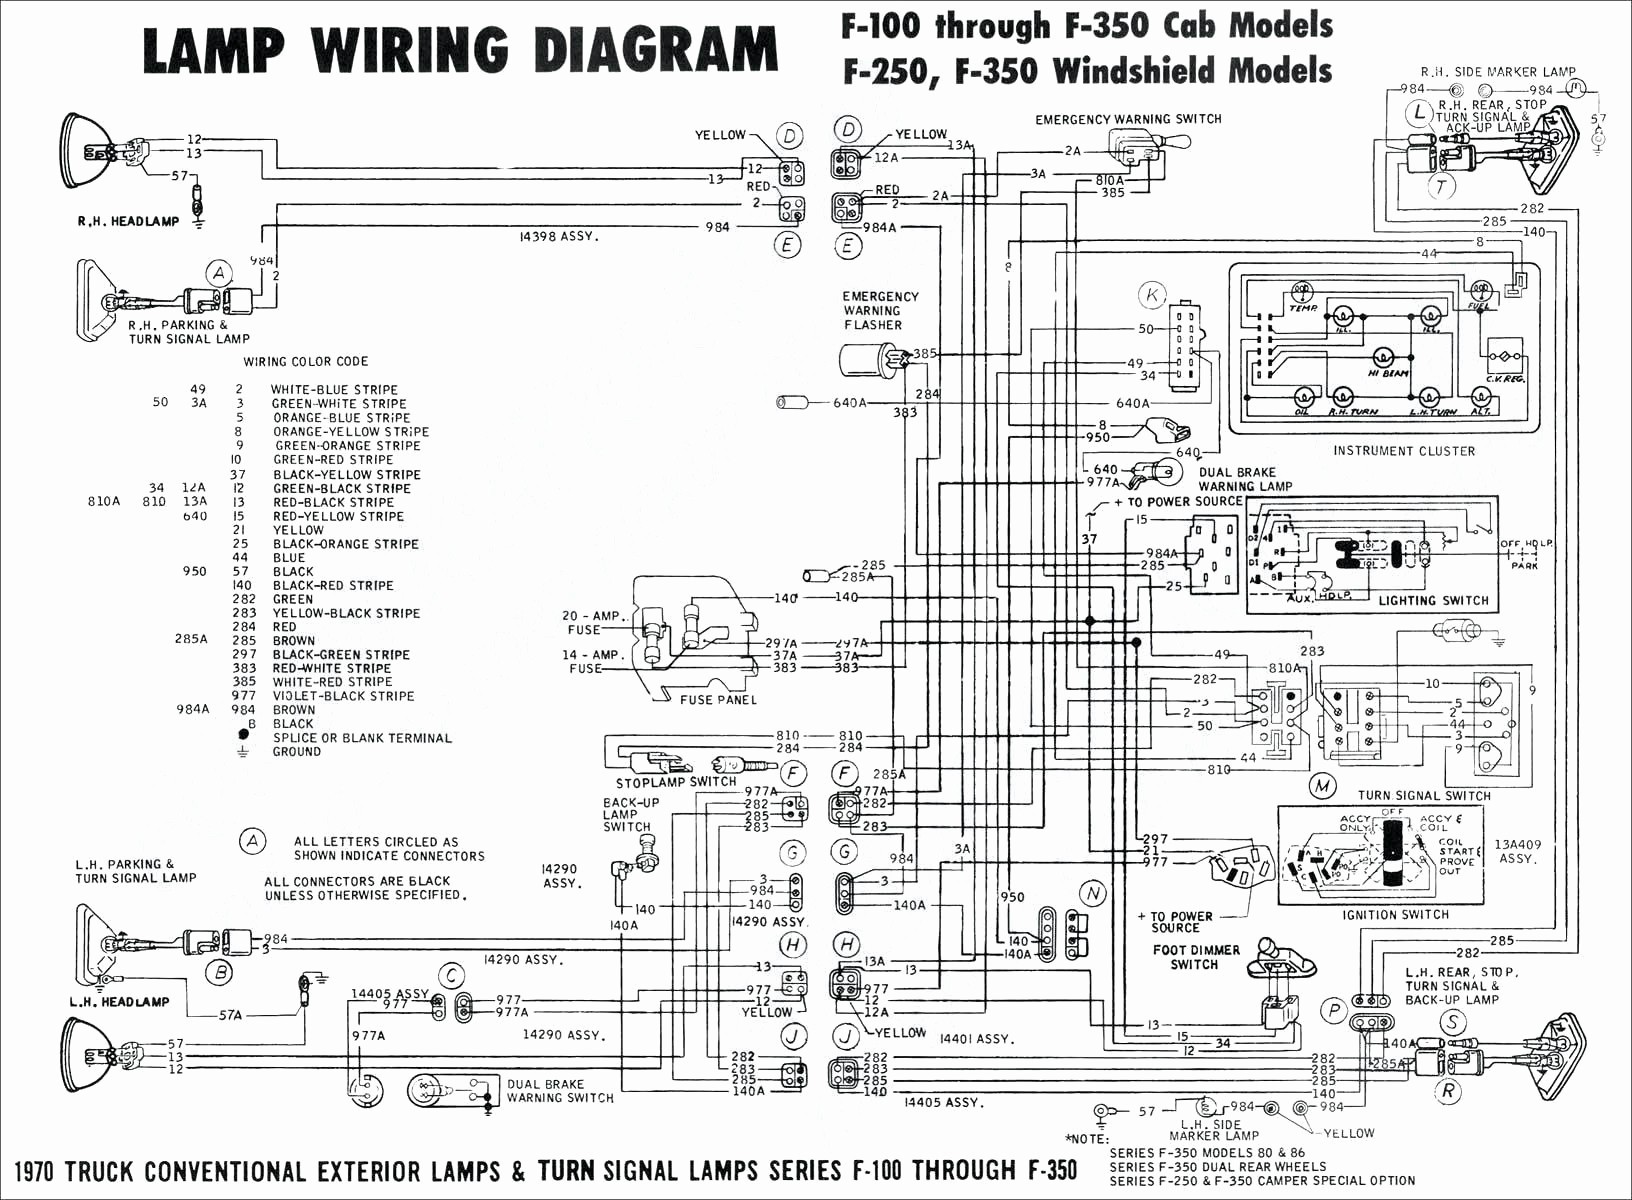 Automatic Transmission Parts Diagram Thm 700r4 Transmission Diagram Wiring Diagram toolbox Of Automatic Transmission Parts Diagram